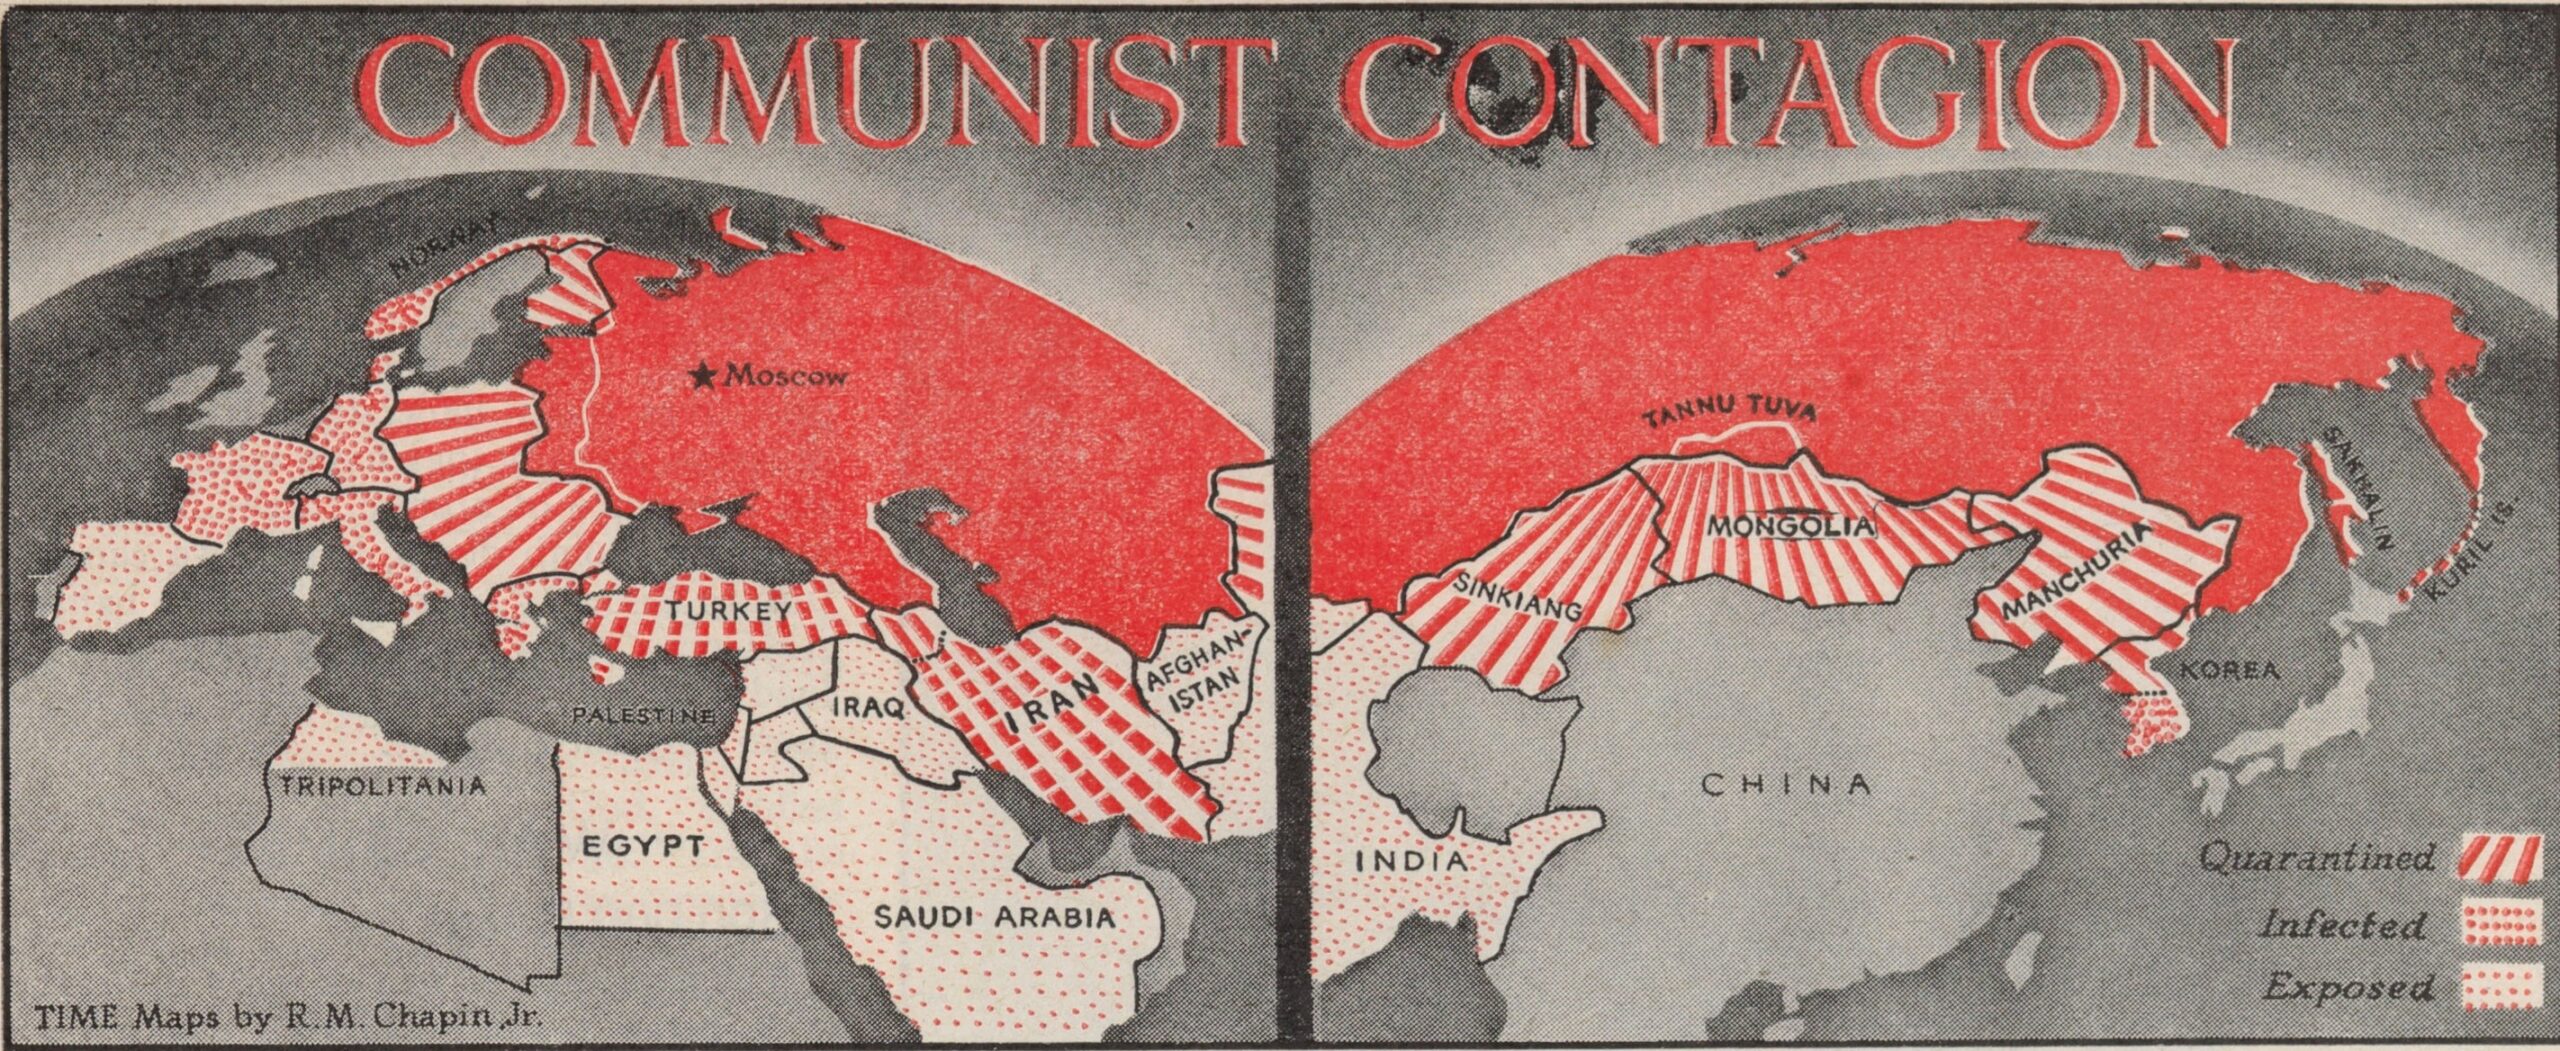 El contagio comunista (1946)